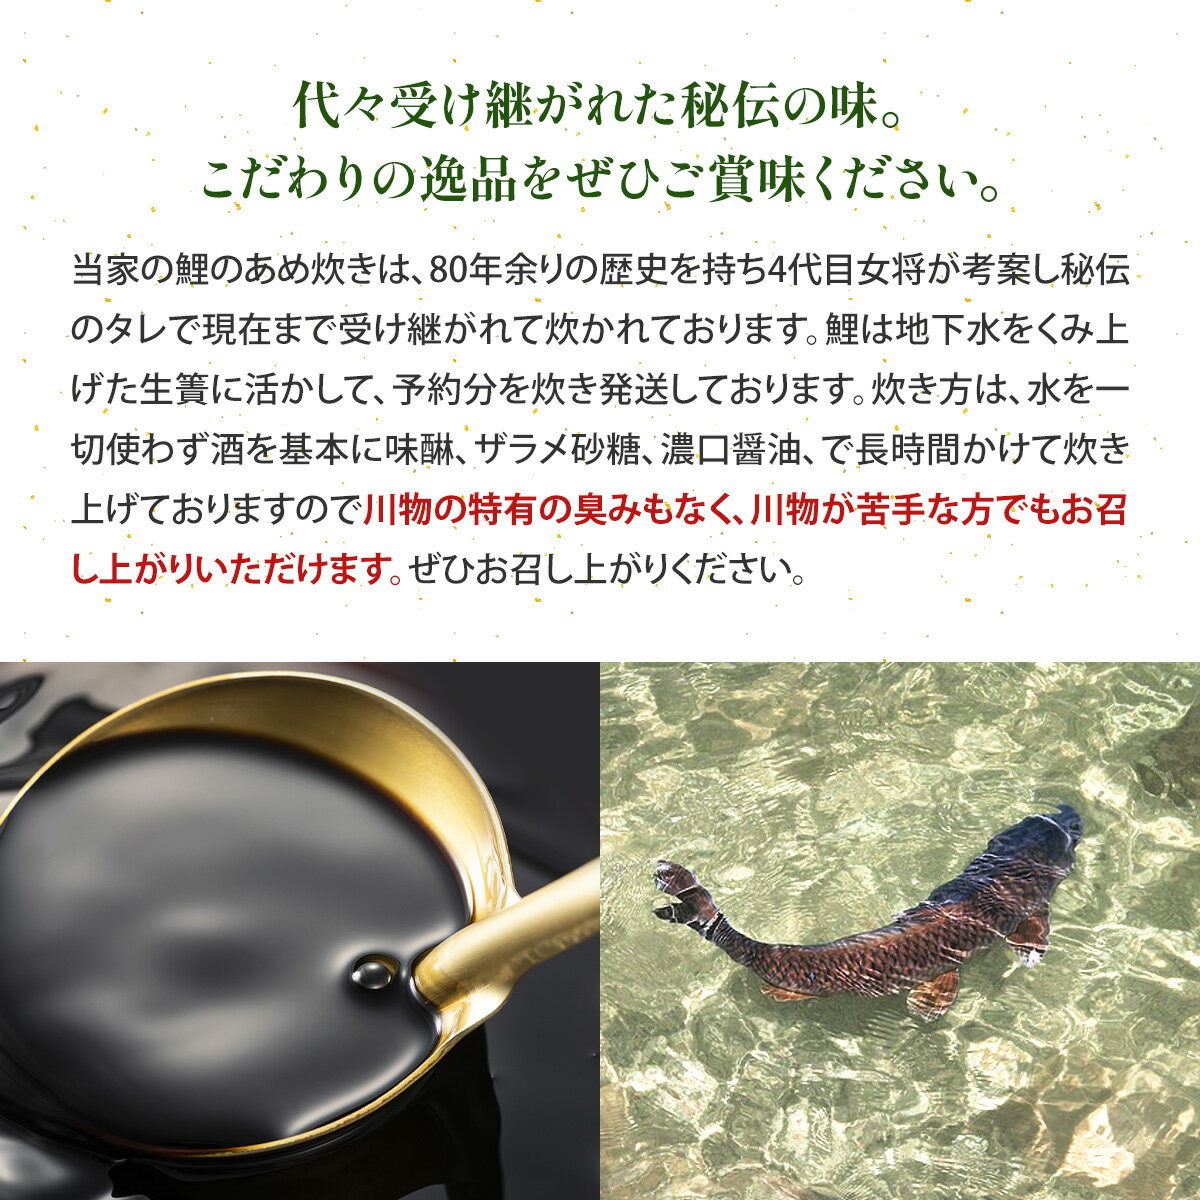 【ふるさと納税】竹平楼 名物 鯉のあめ煮 5切れ 箱入(真空)AM03